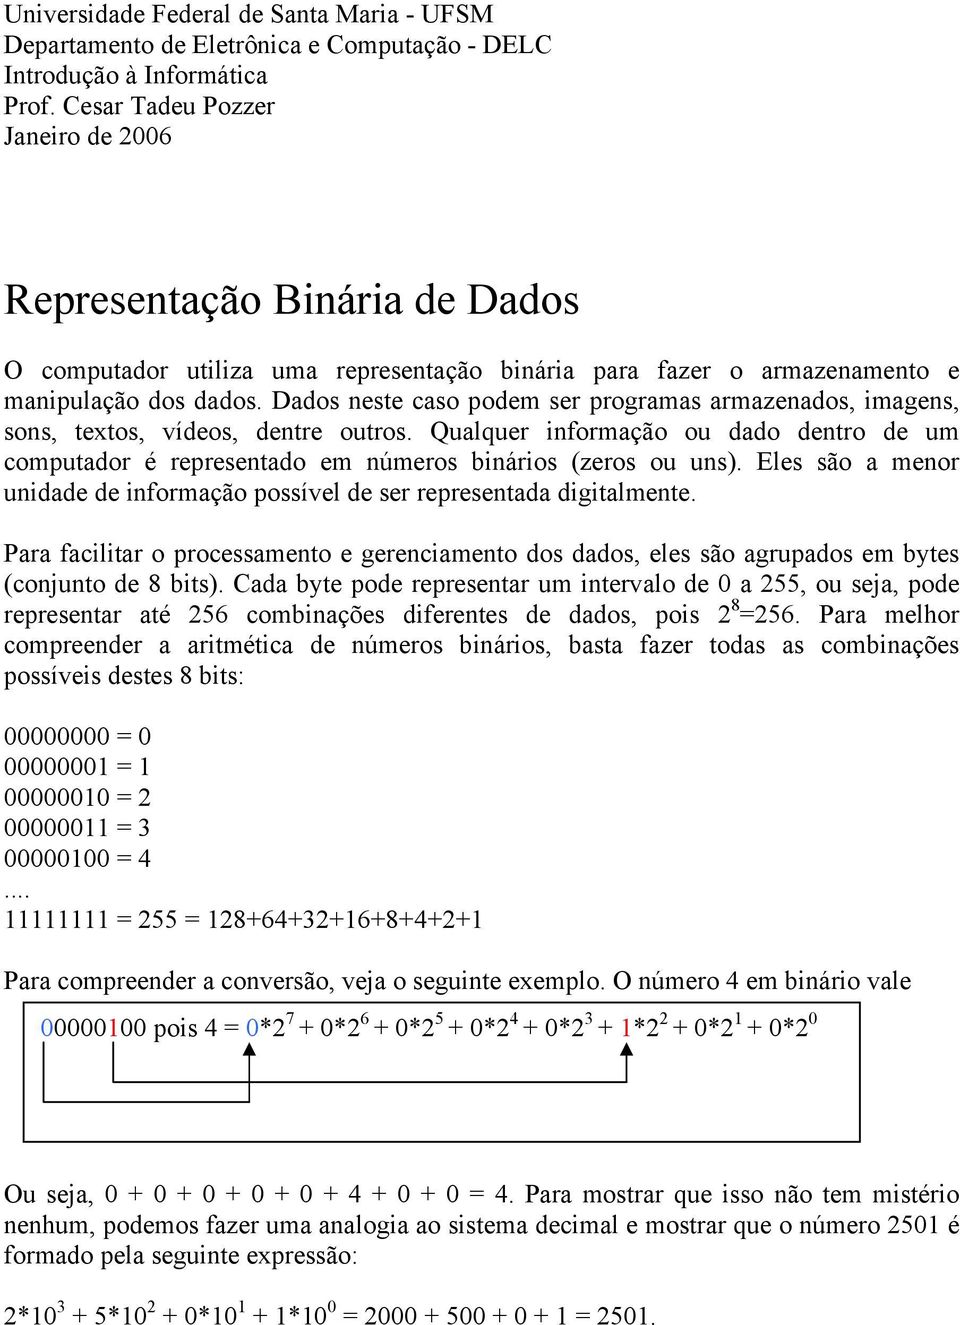 Dados neste caso podem ser programas armazenados, imagens, sons, textos, vídeos, dentre outros. Qualquer informação ou dado dentro de um computador é representado em números binários (zeros ou uns).